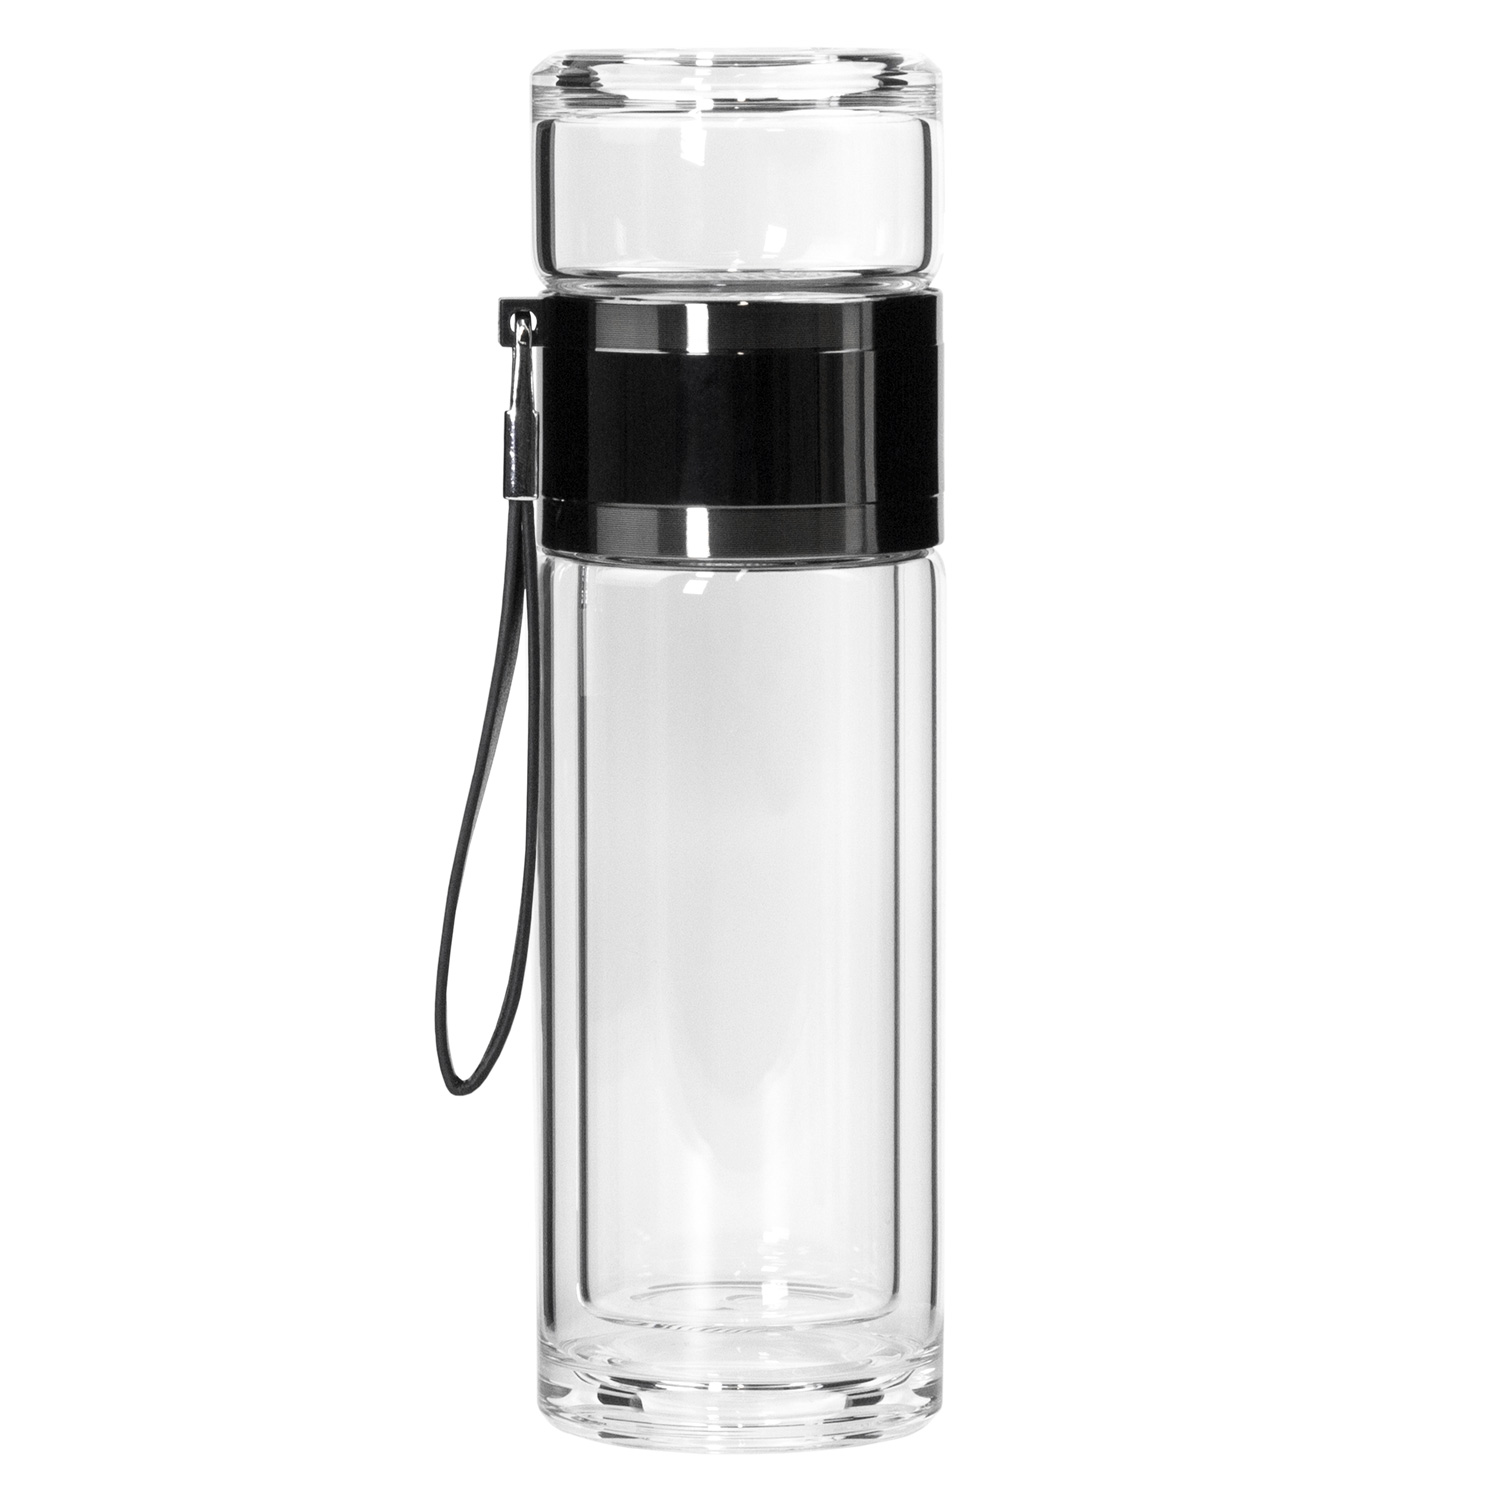 Артикул: A224195.110 — Бутылка стеклянная с двойными стенками, Terso, 300 ml